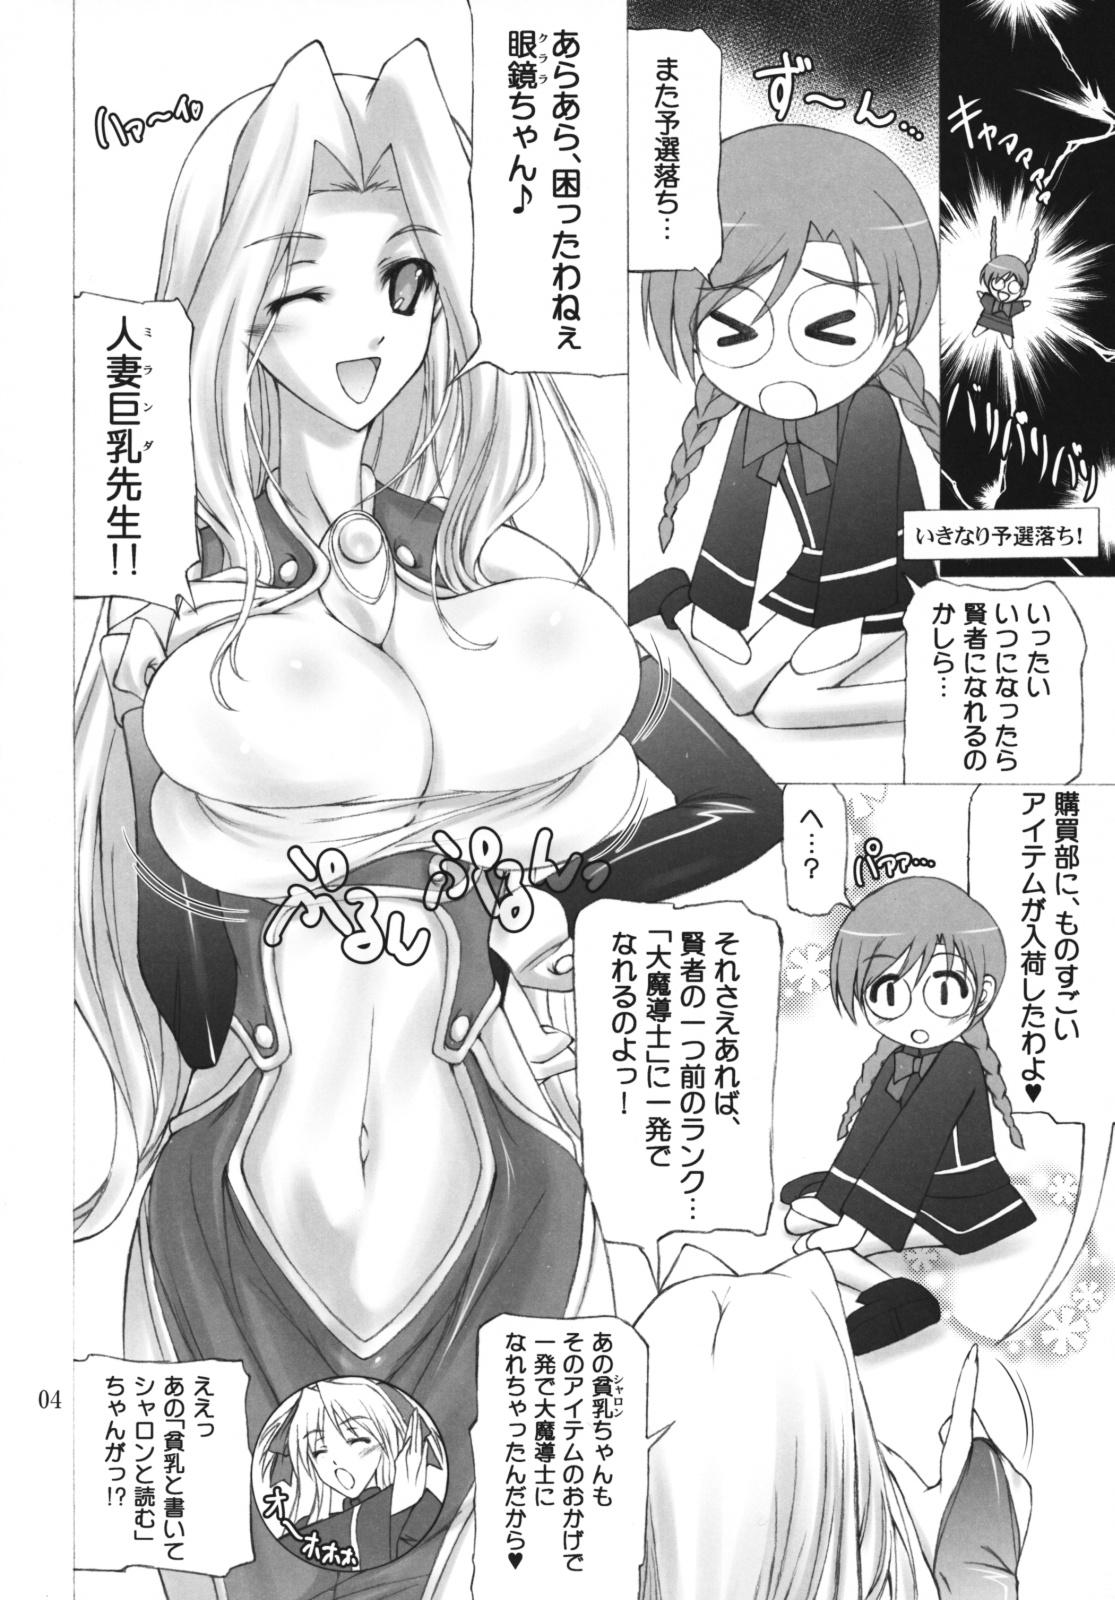 Babe Quiz Chikara Udon Hajimemashita! - Quiz magic academy Gloryhole - Page 3